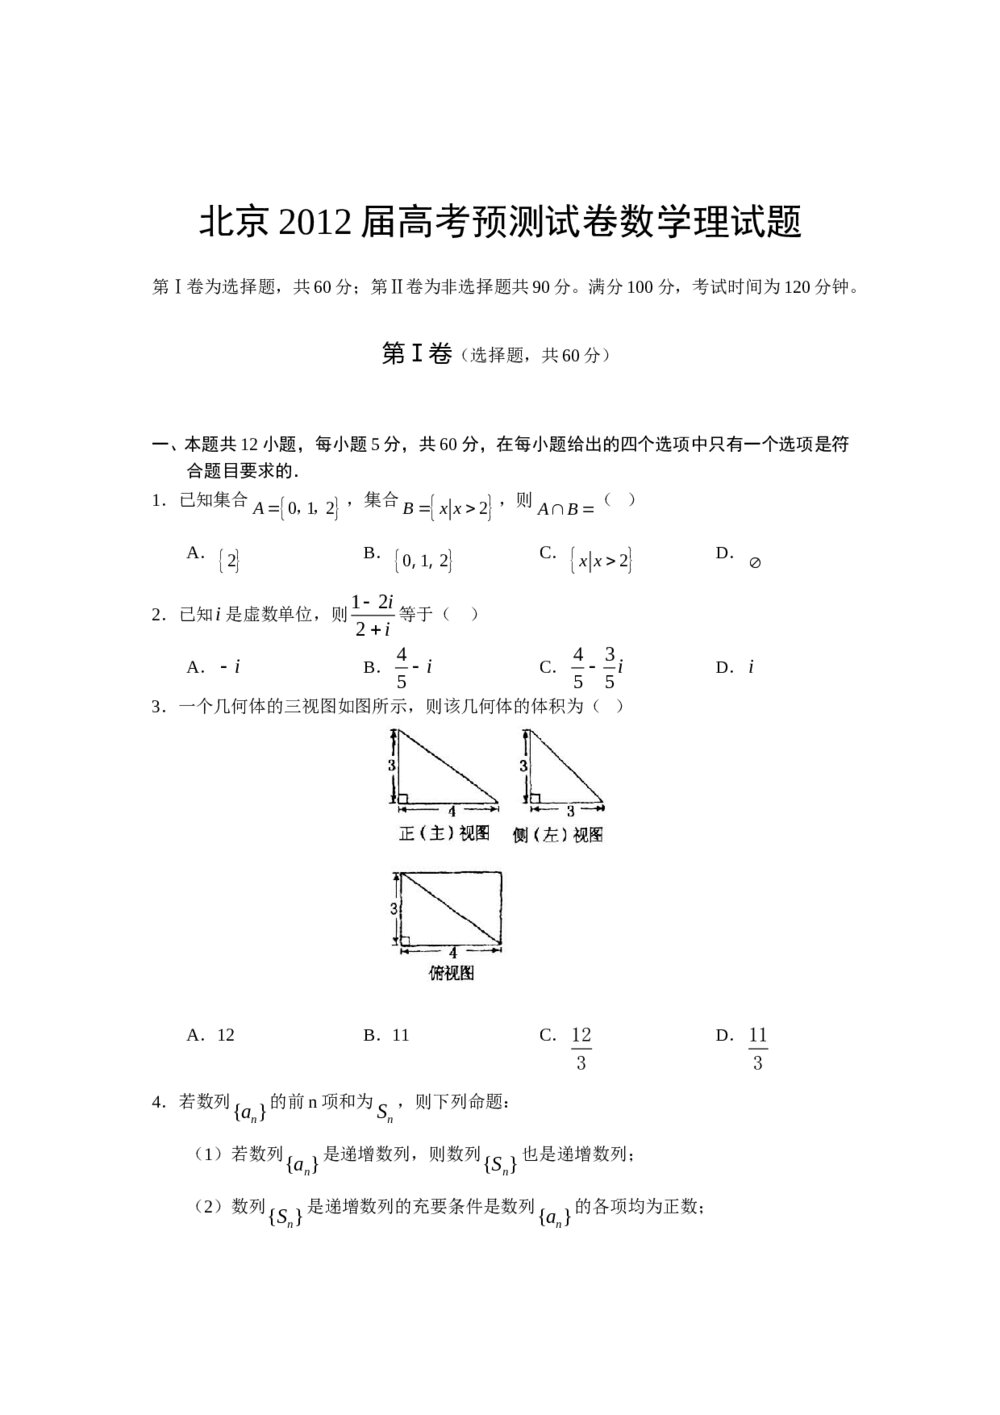 北京2012年高考数学(理科)试题试卷+答案1